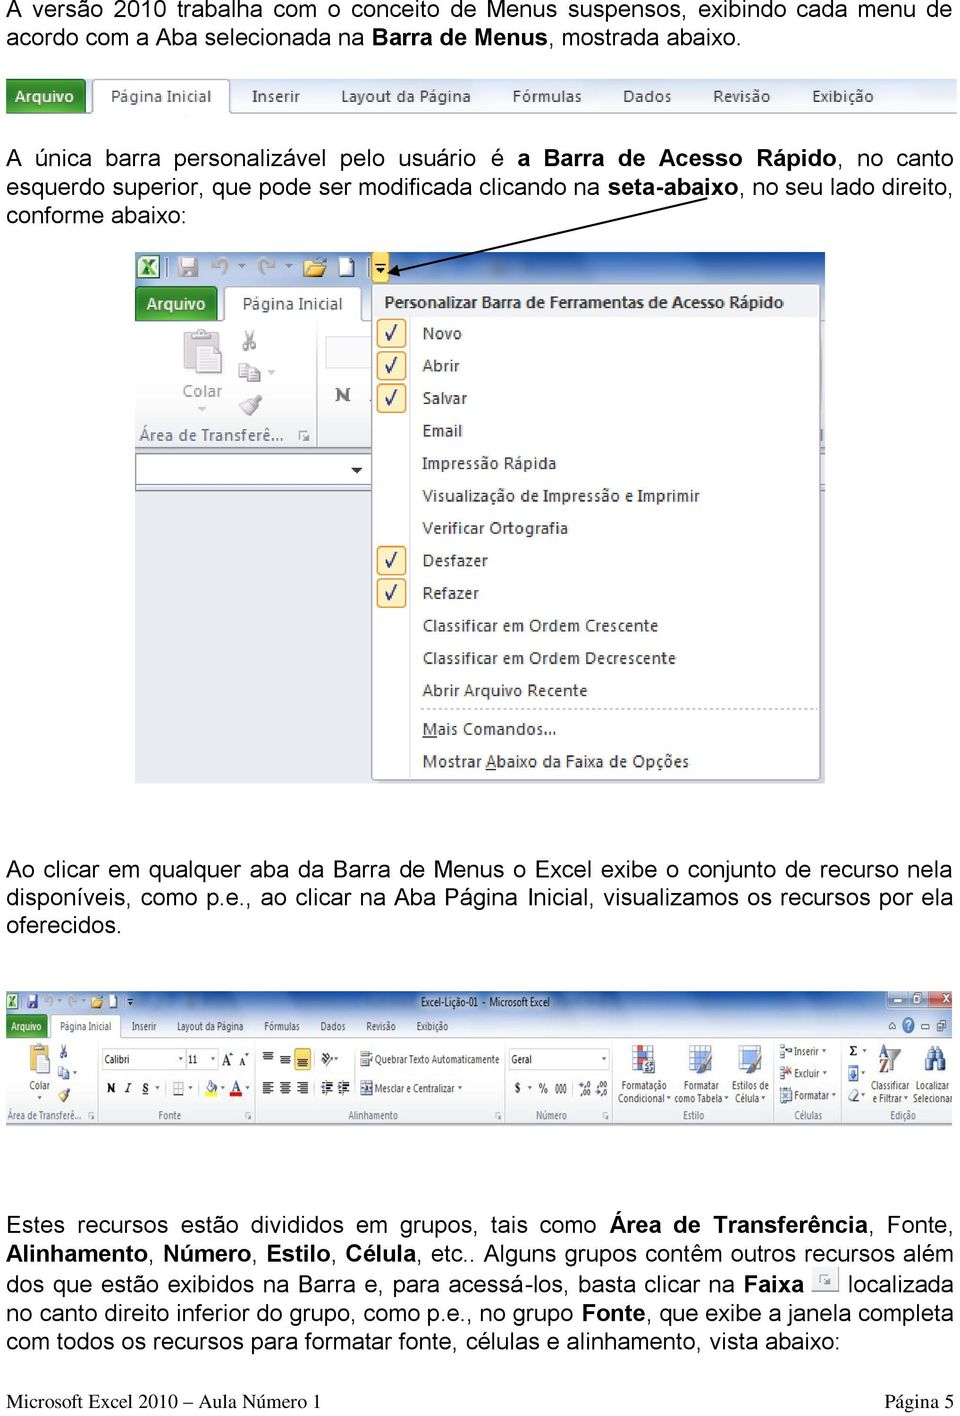 qualquer aba da Barra de Menus o Excel exibe o conjunto de recurso nela disponíveis, como p.e., ao clicar na Aba Página Inicial, visualizamos os recursos por ela oferecidos.